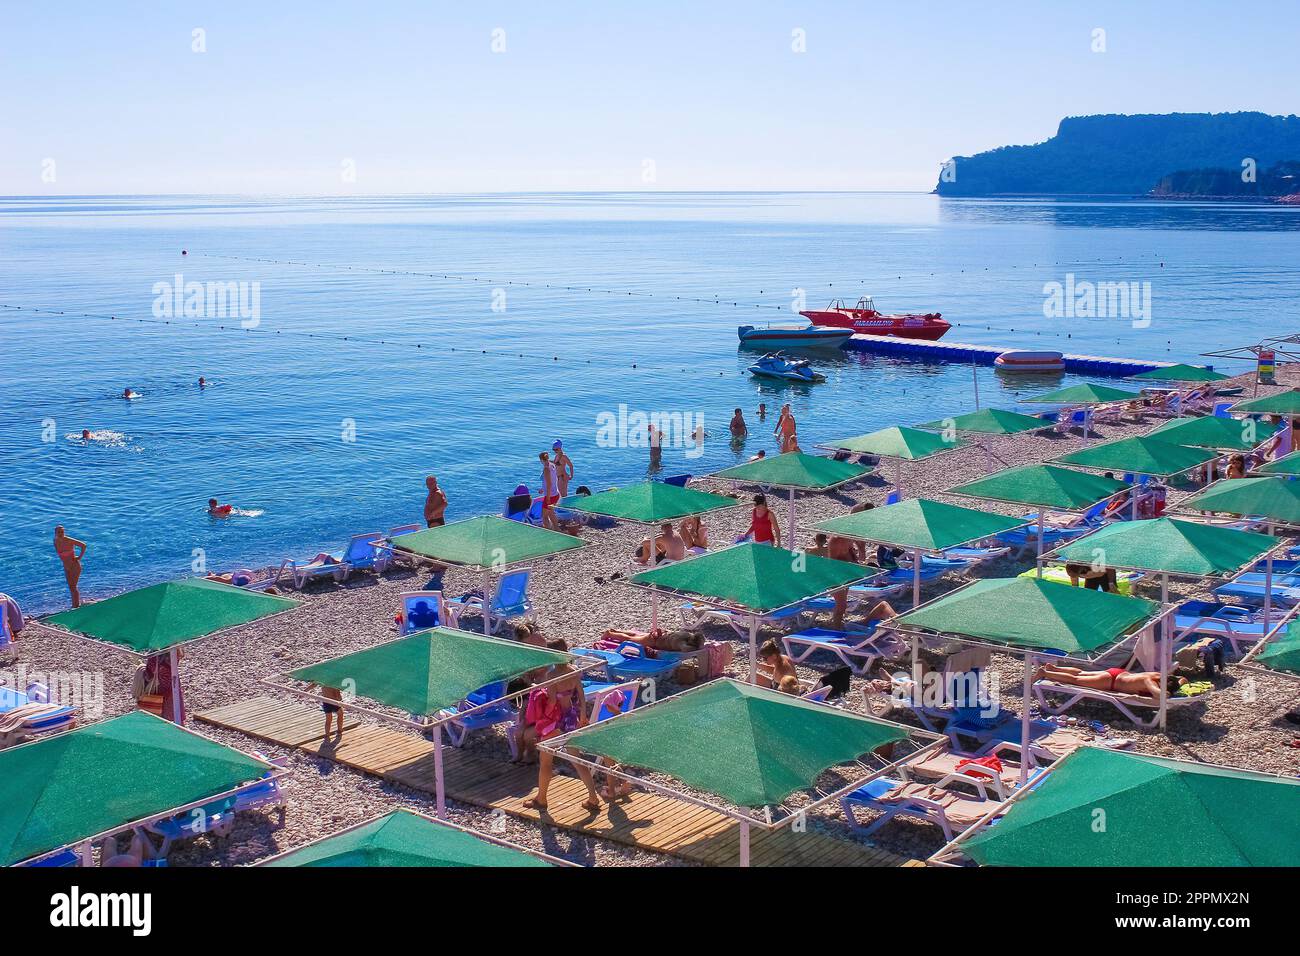 Panorama of beach at Kemer, Antalya, Turkey Stock Photo